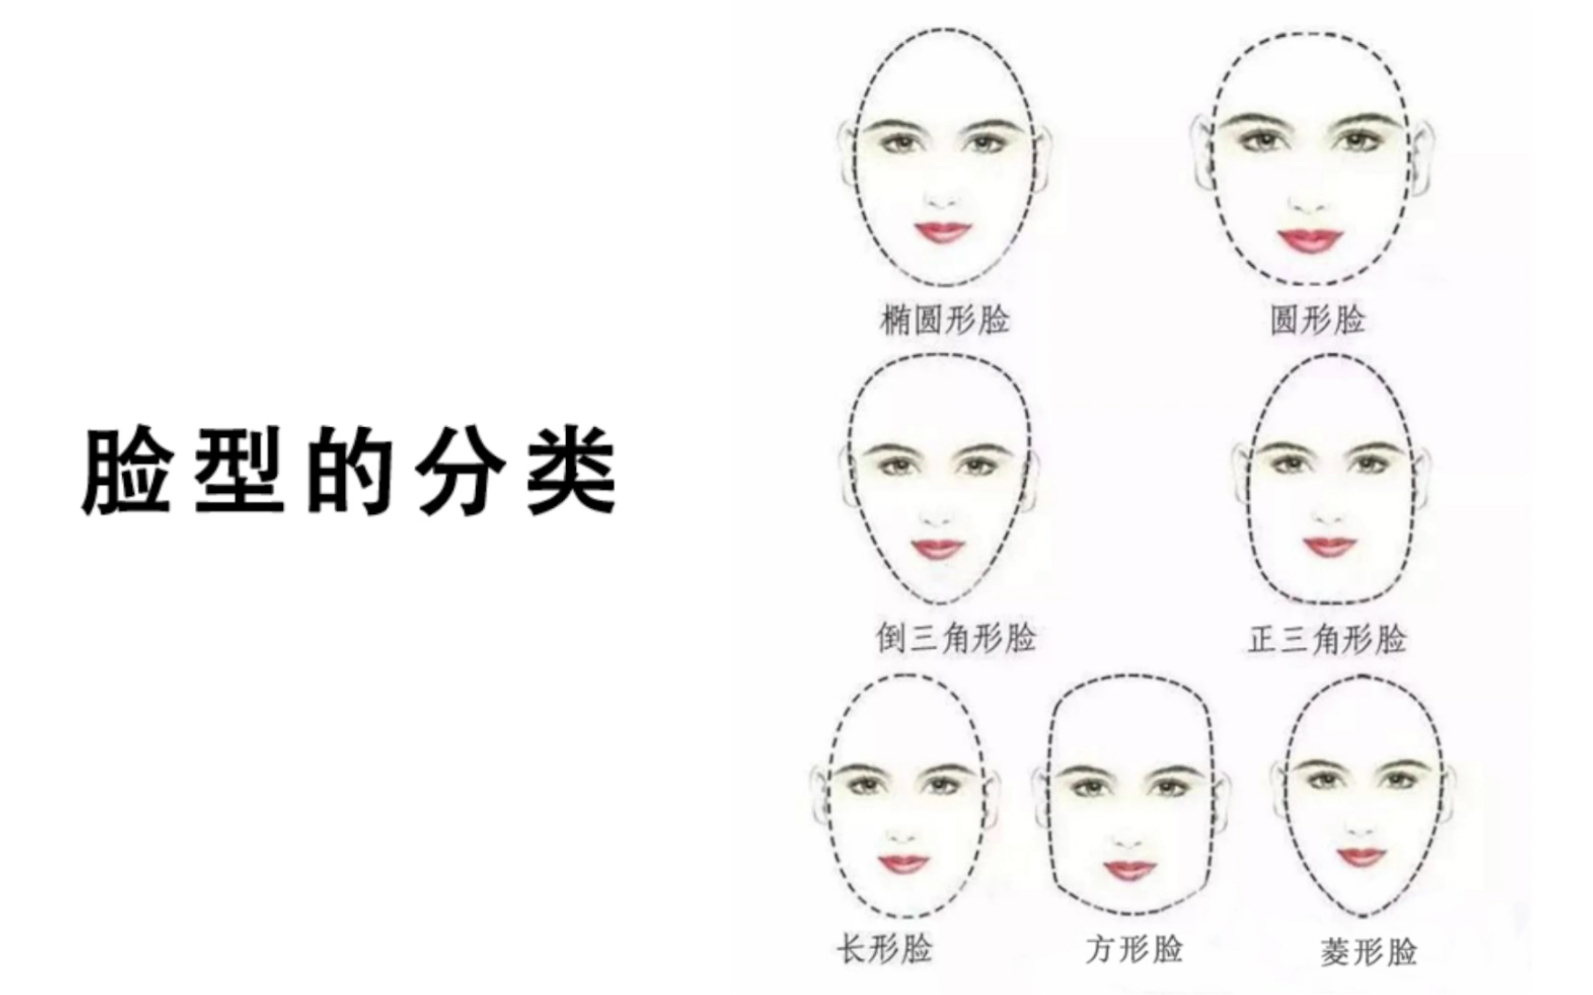 8种脸型/ 摄影脸型判断方式/5分钟快速判断自己的脸型